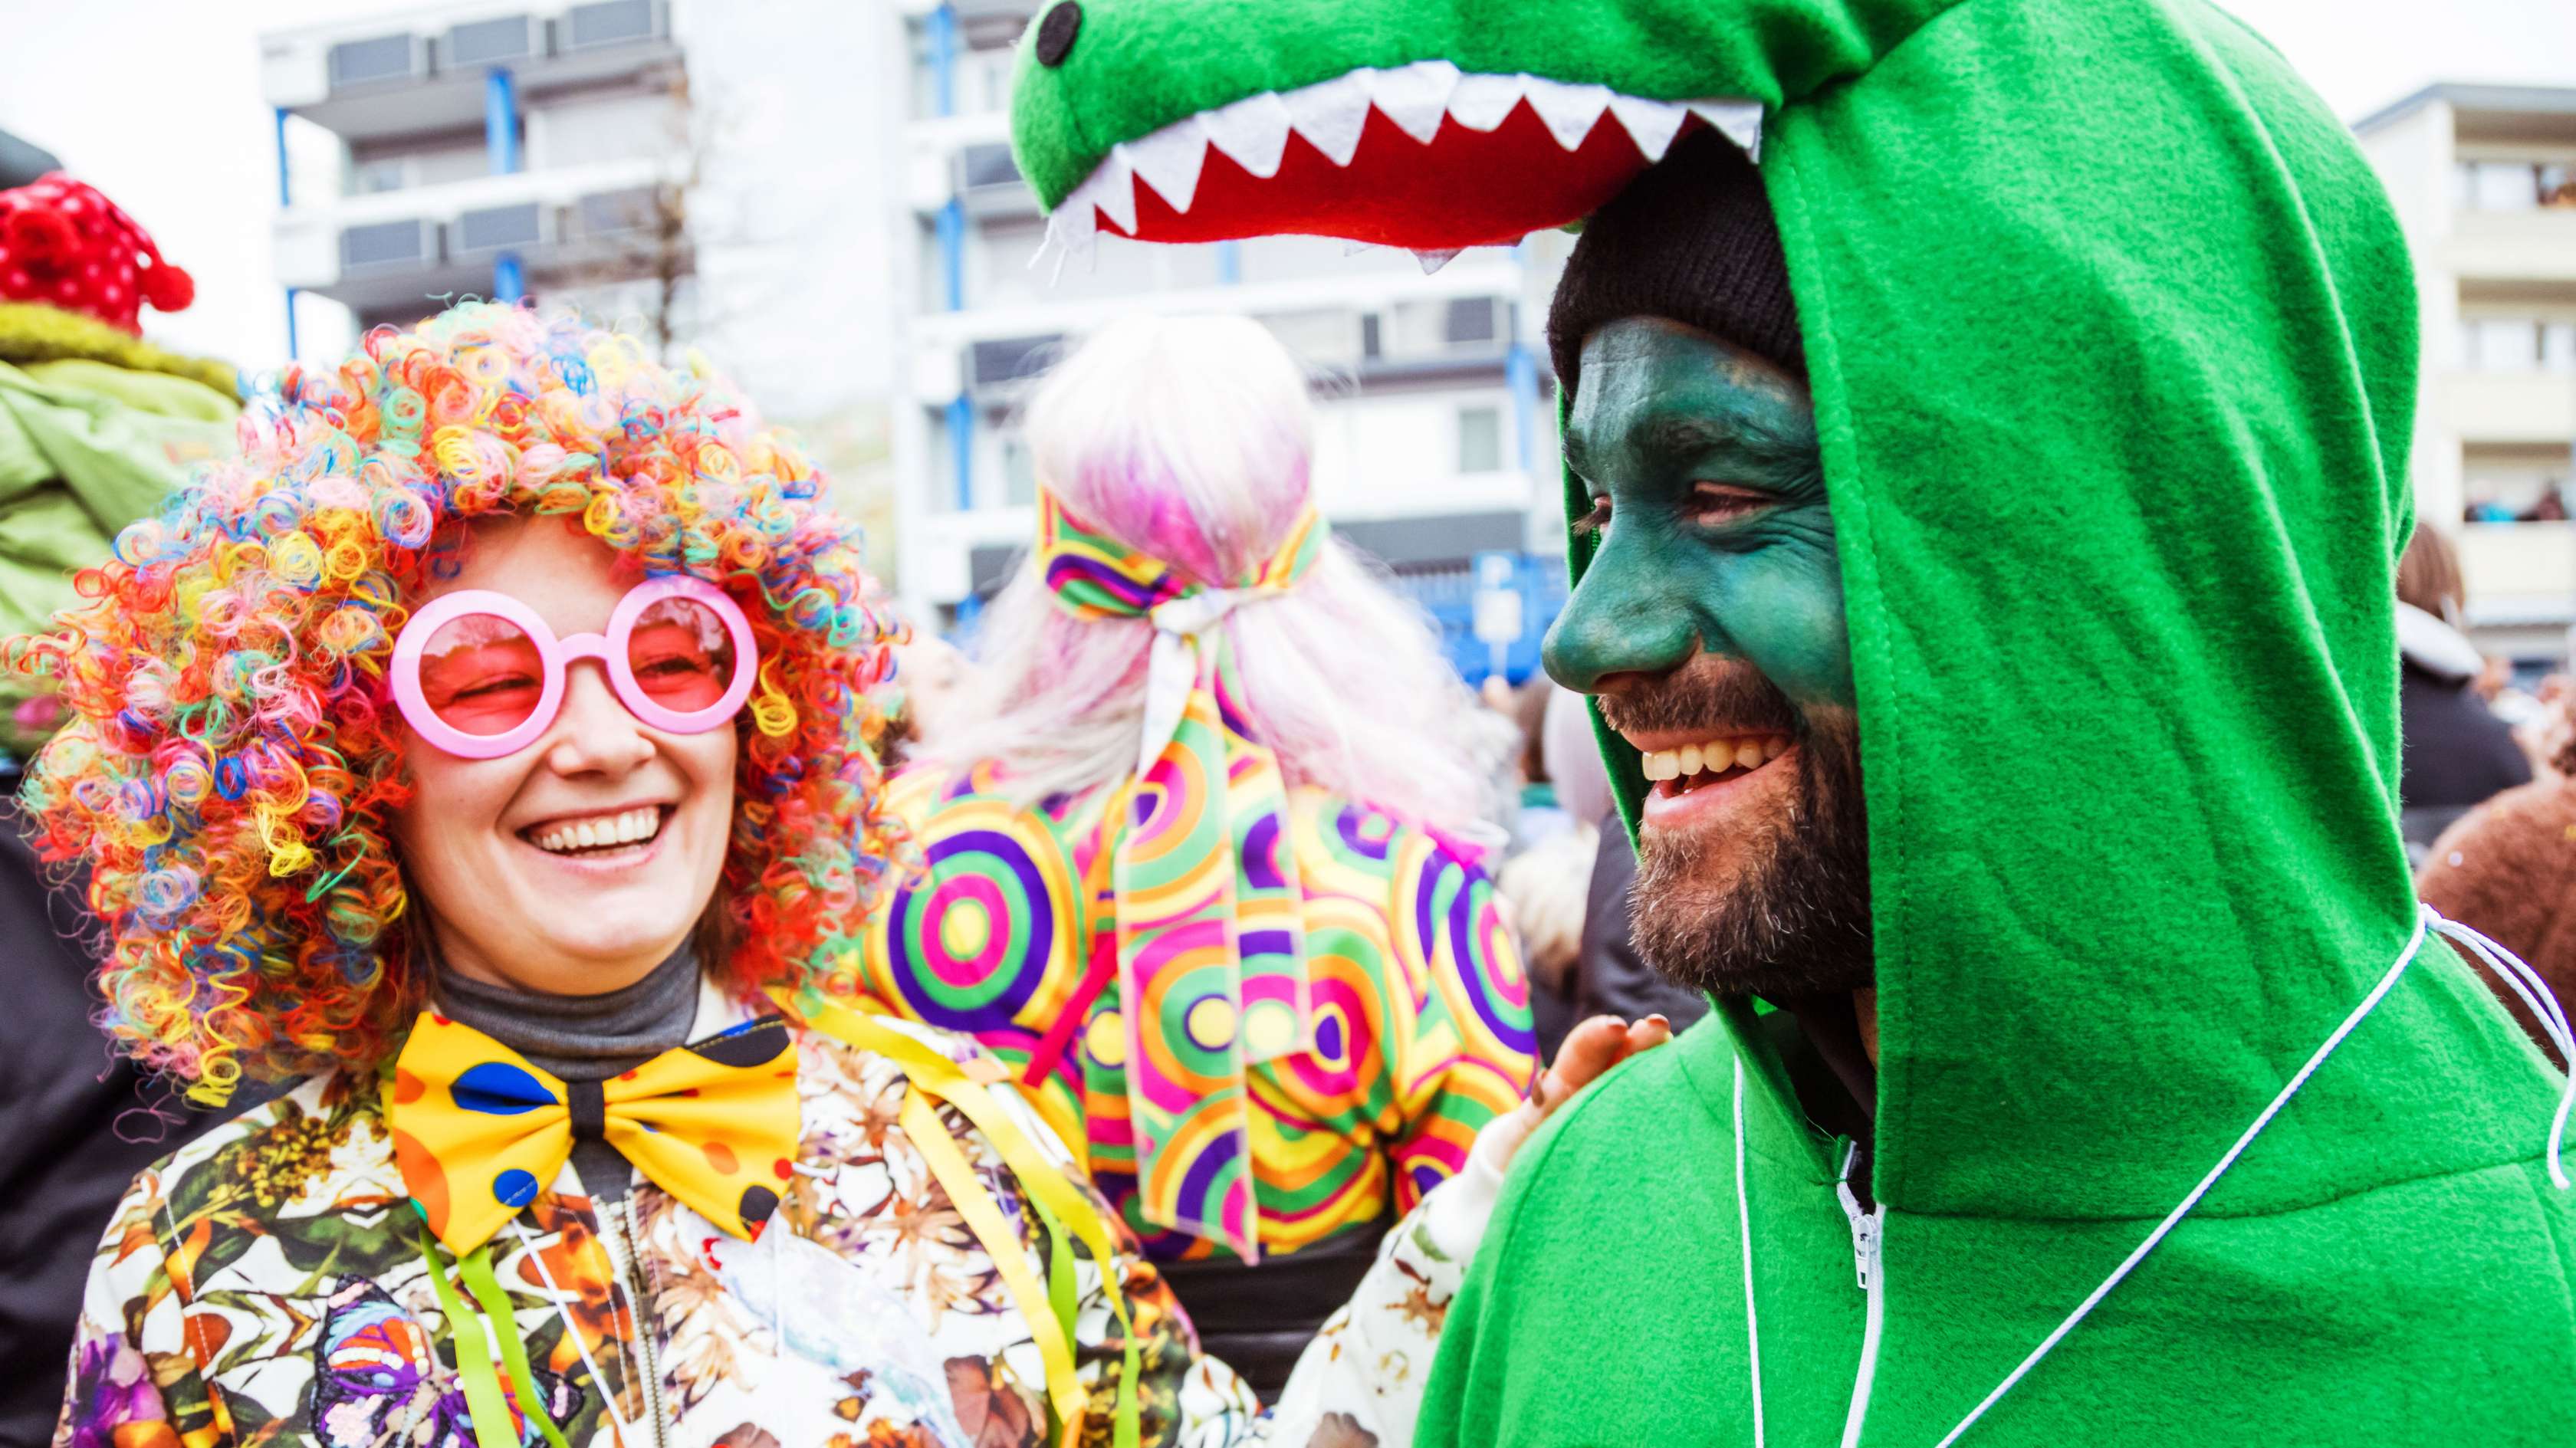 Karneval auf der Straße: Eine Mann im Krokodilkostüm und eine Frau als Clown verkleidet